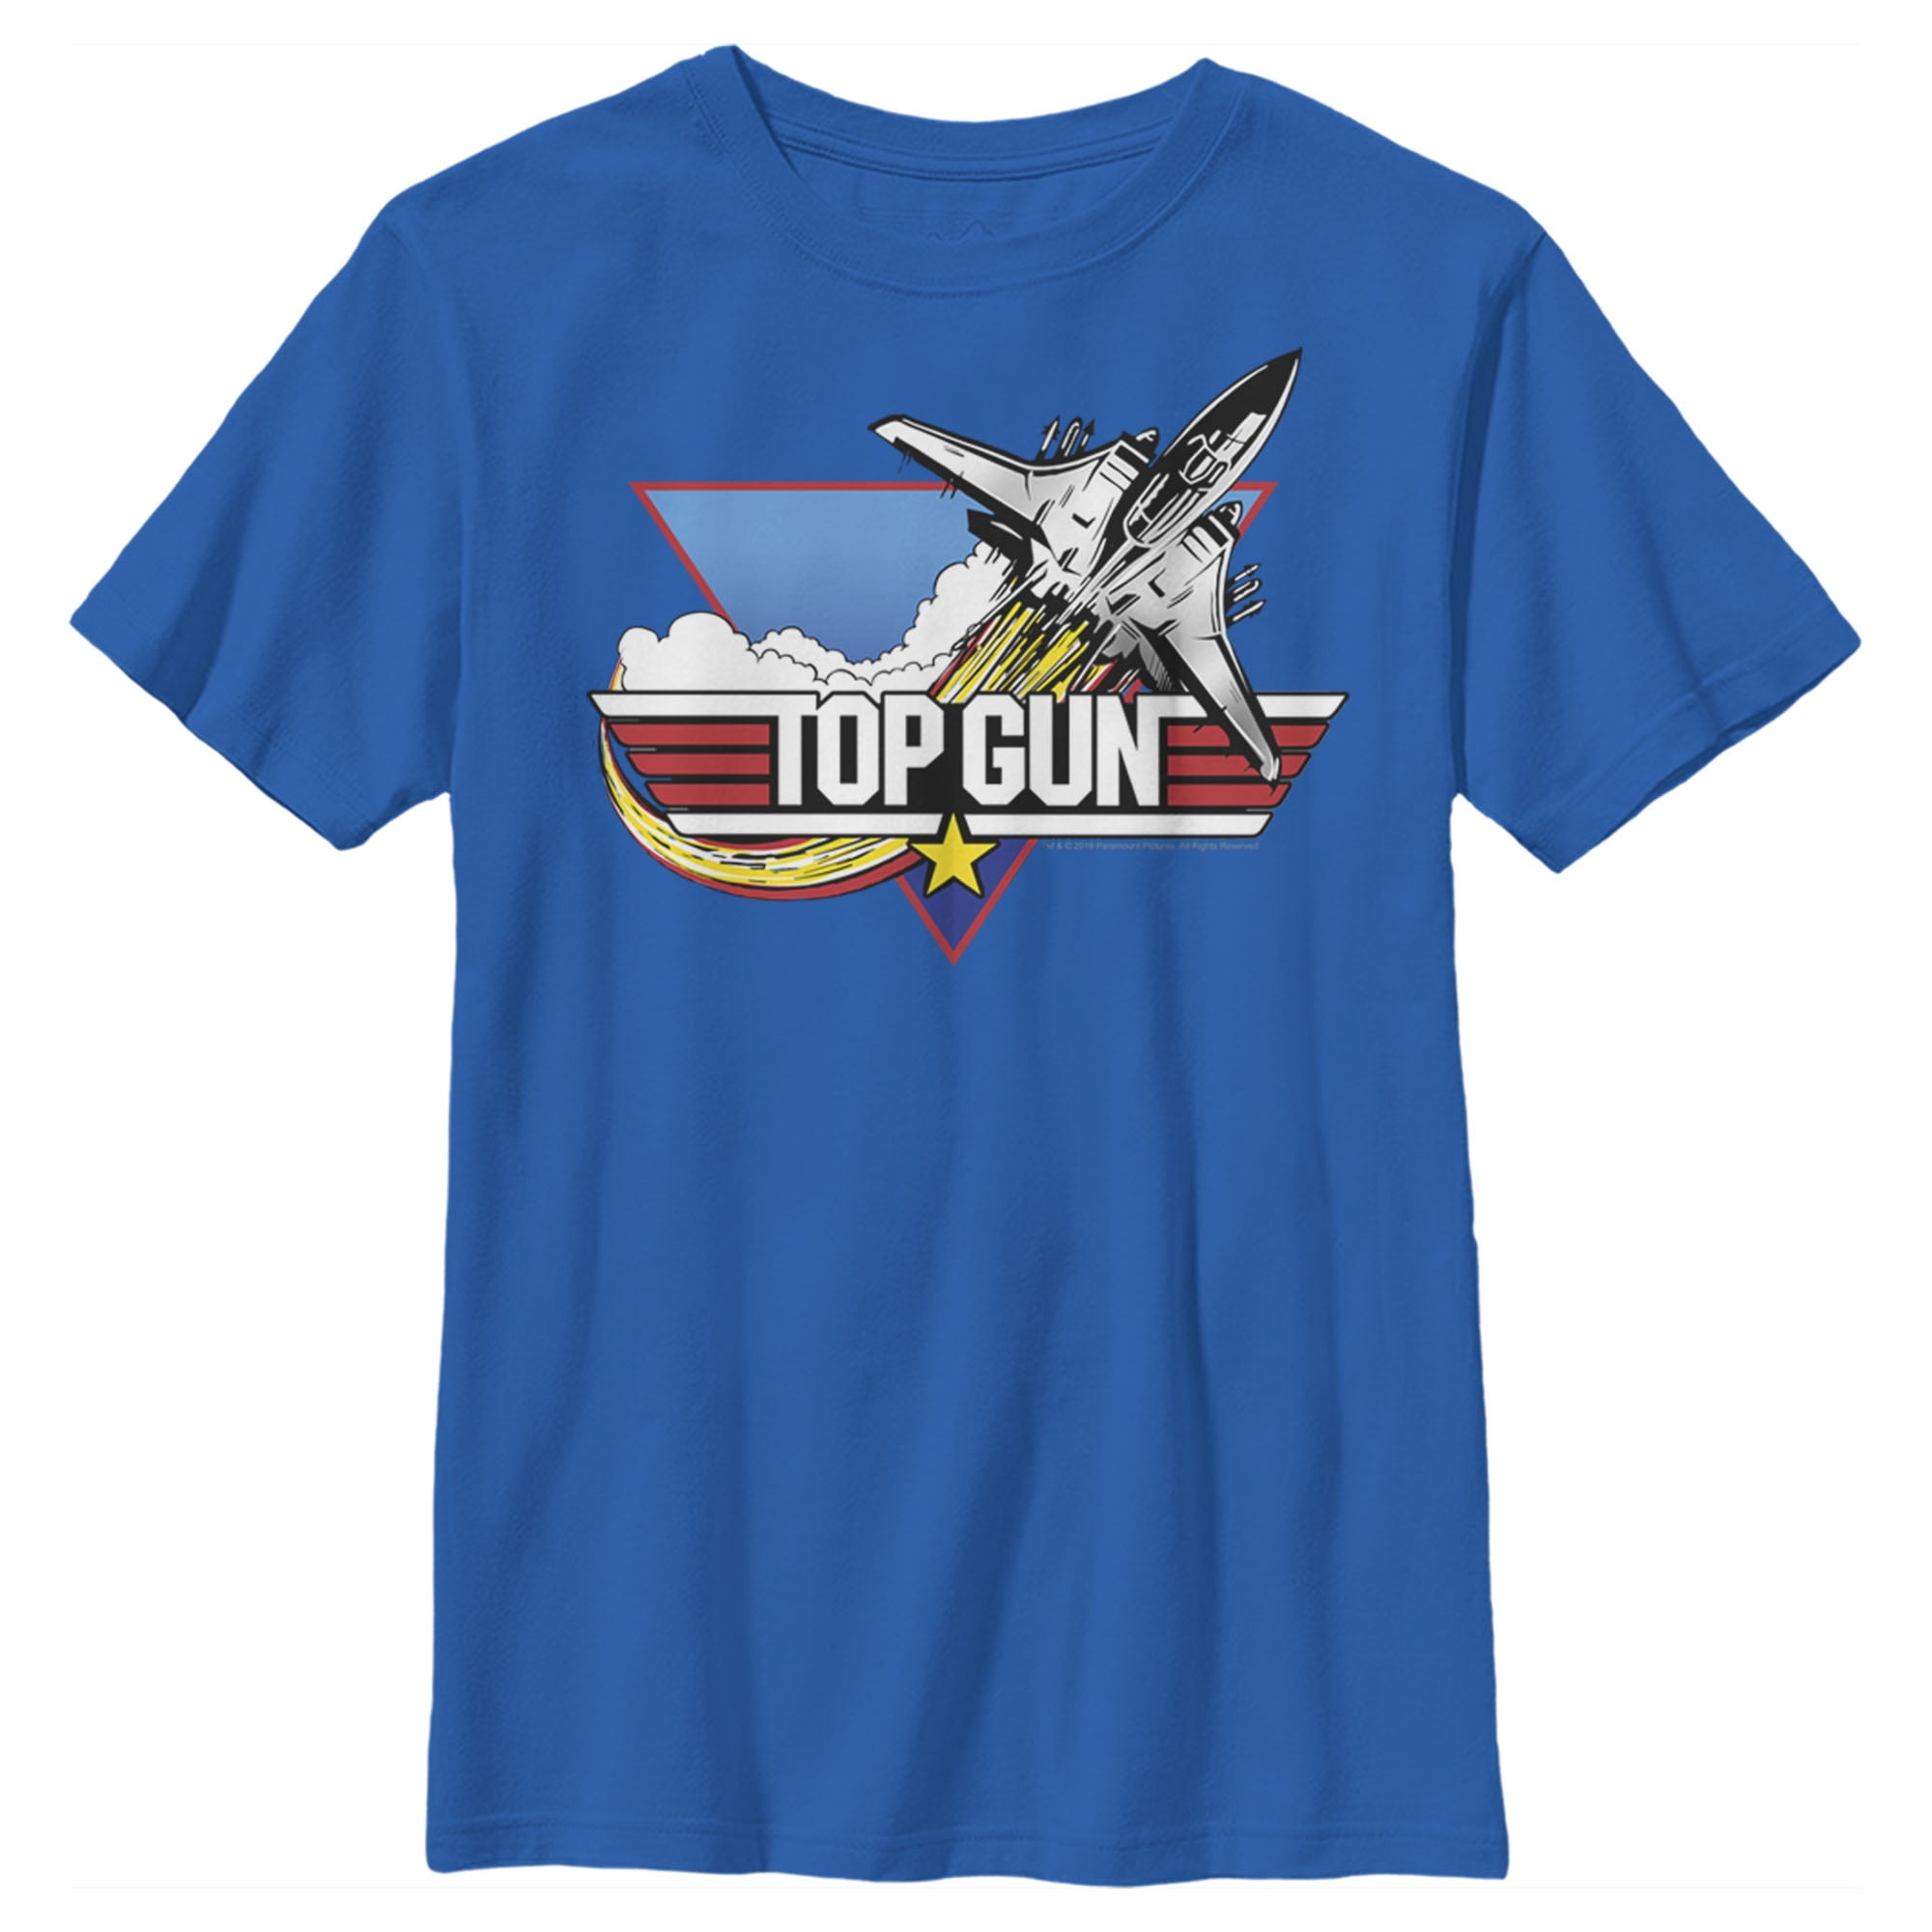 Black Fighter Tee Jet Boy\'s Large Graphic Top Gun Logo